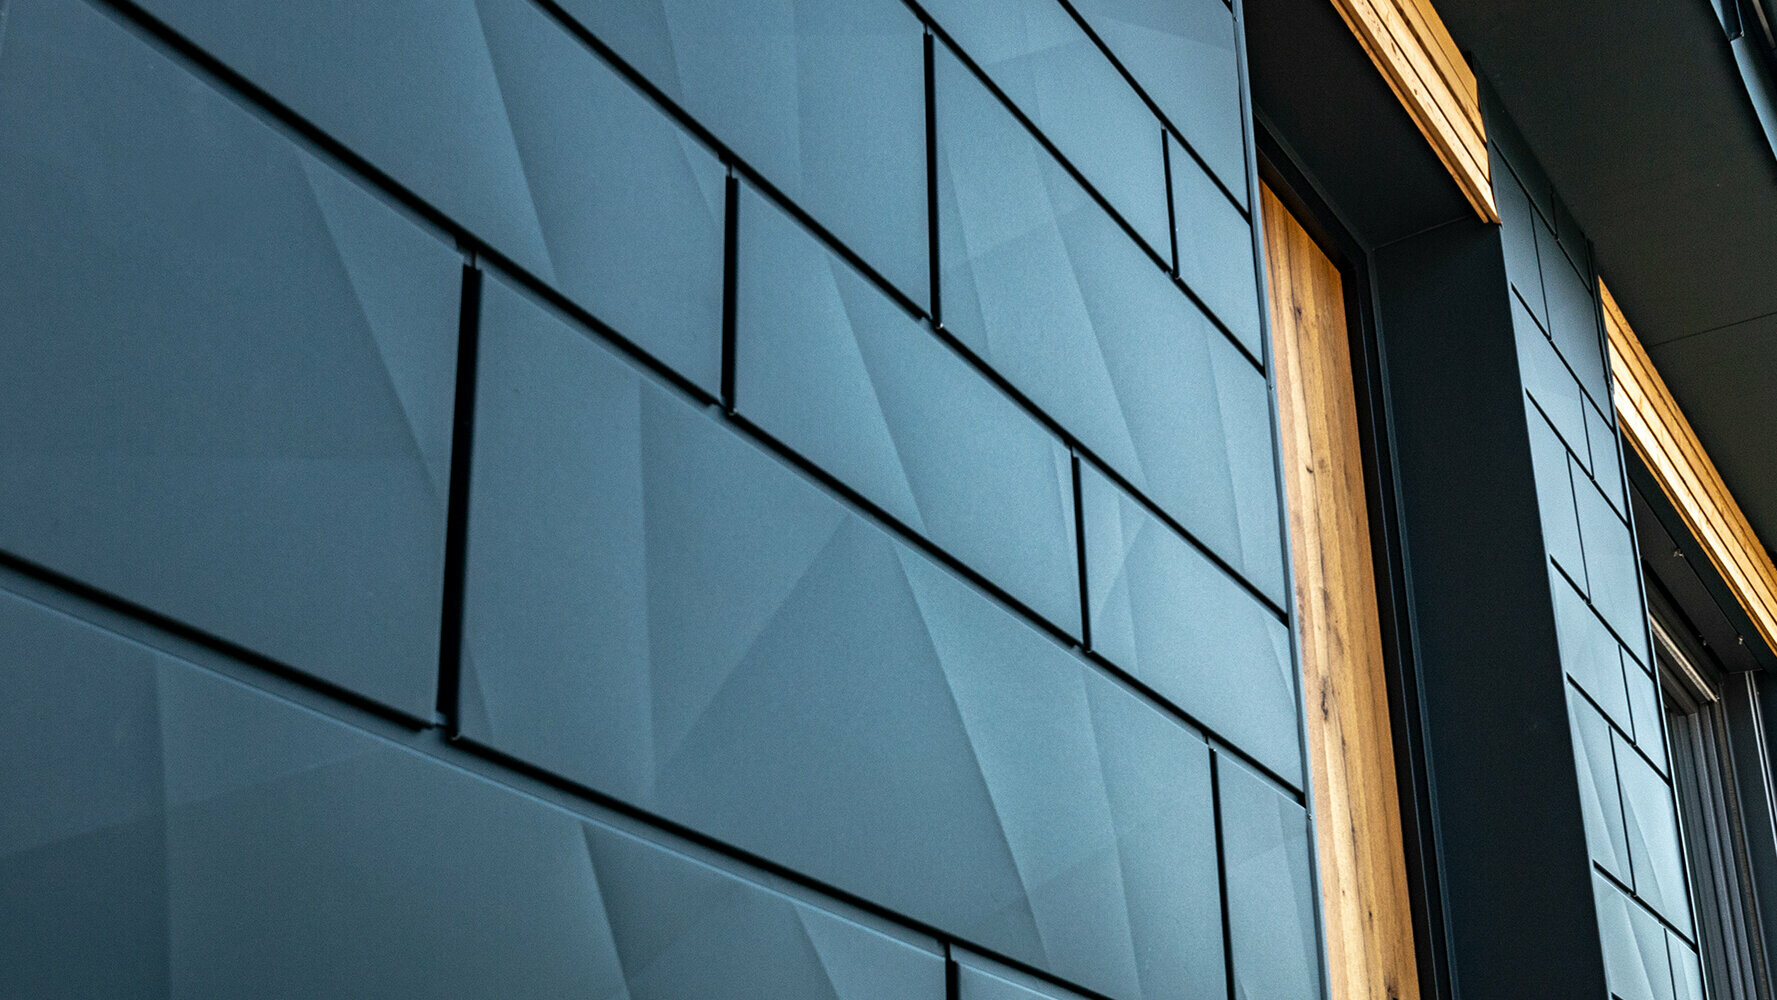 Pannello per facciata PREFA con effetto ottico irregolare; Doga.X in alluminio PREFA in antracite combinato con facciata in legno.